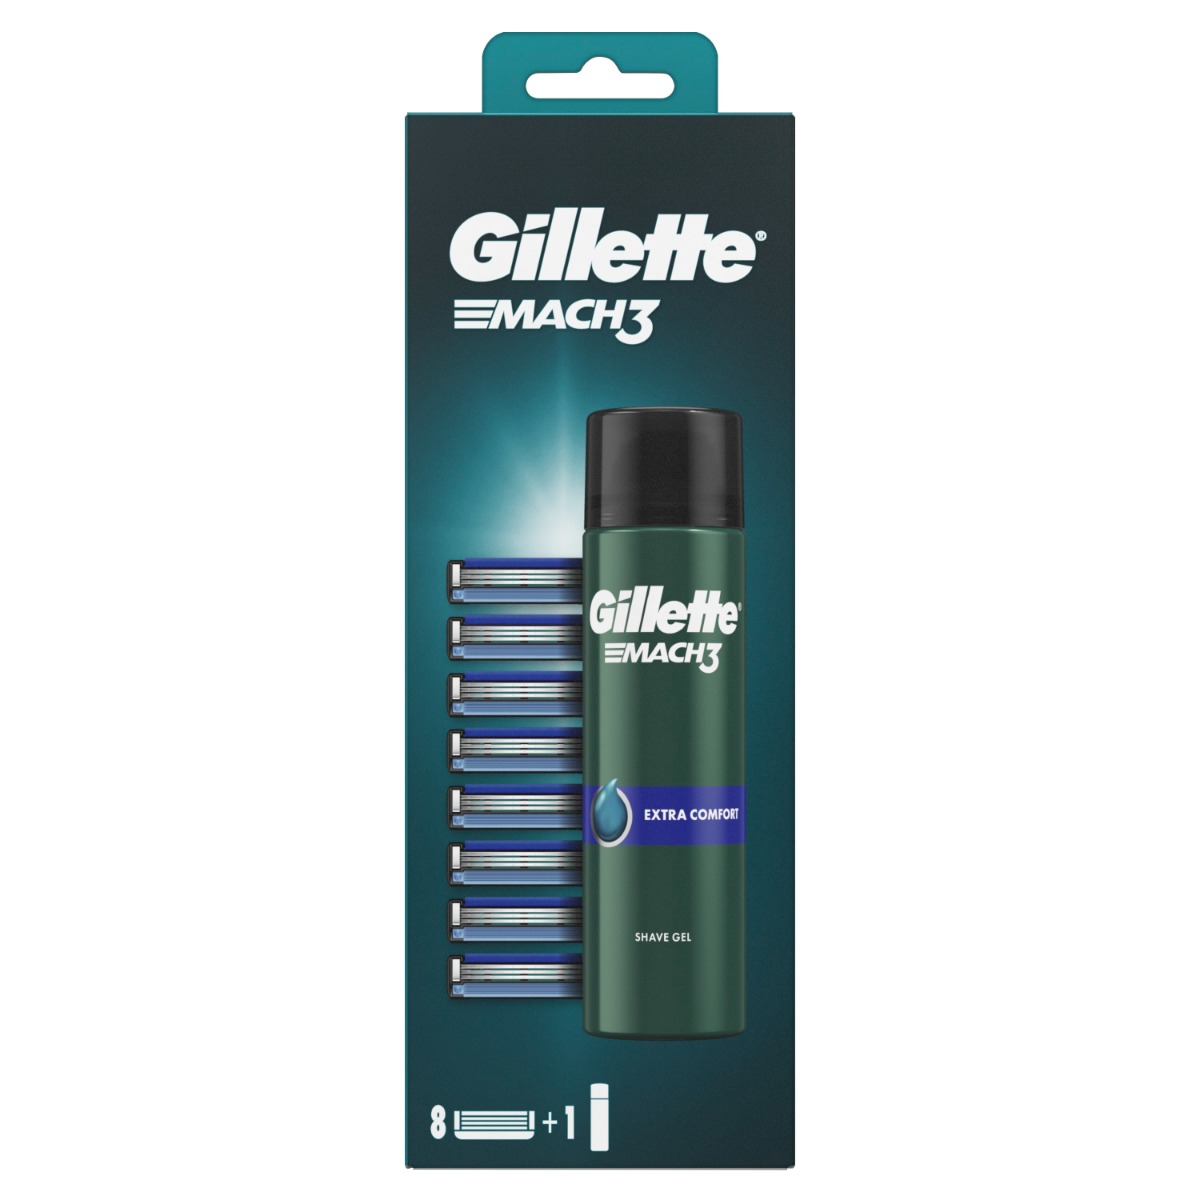 Gillette Mach3 Náhradní hlavice 8 ks + Comfort gel 200 ml Gillette